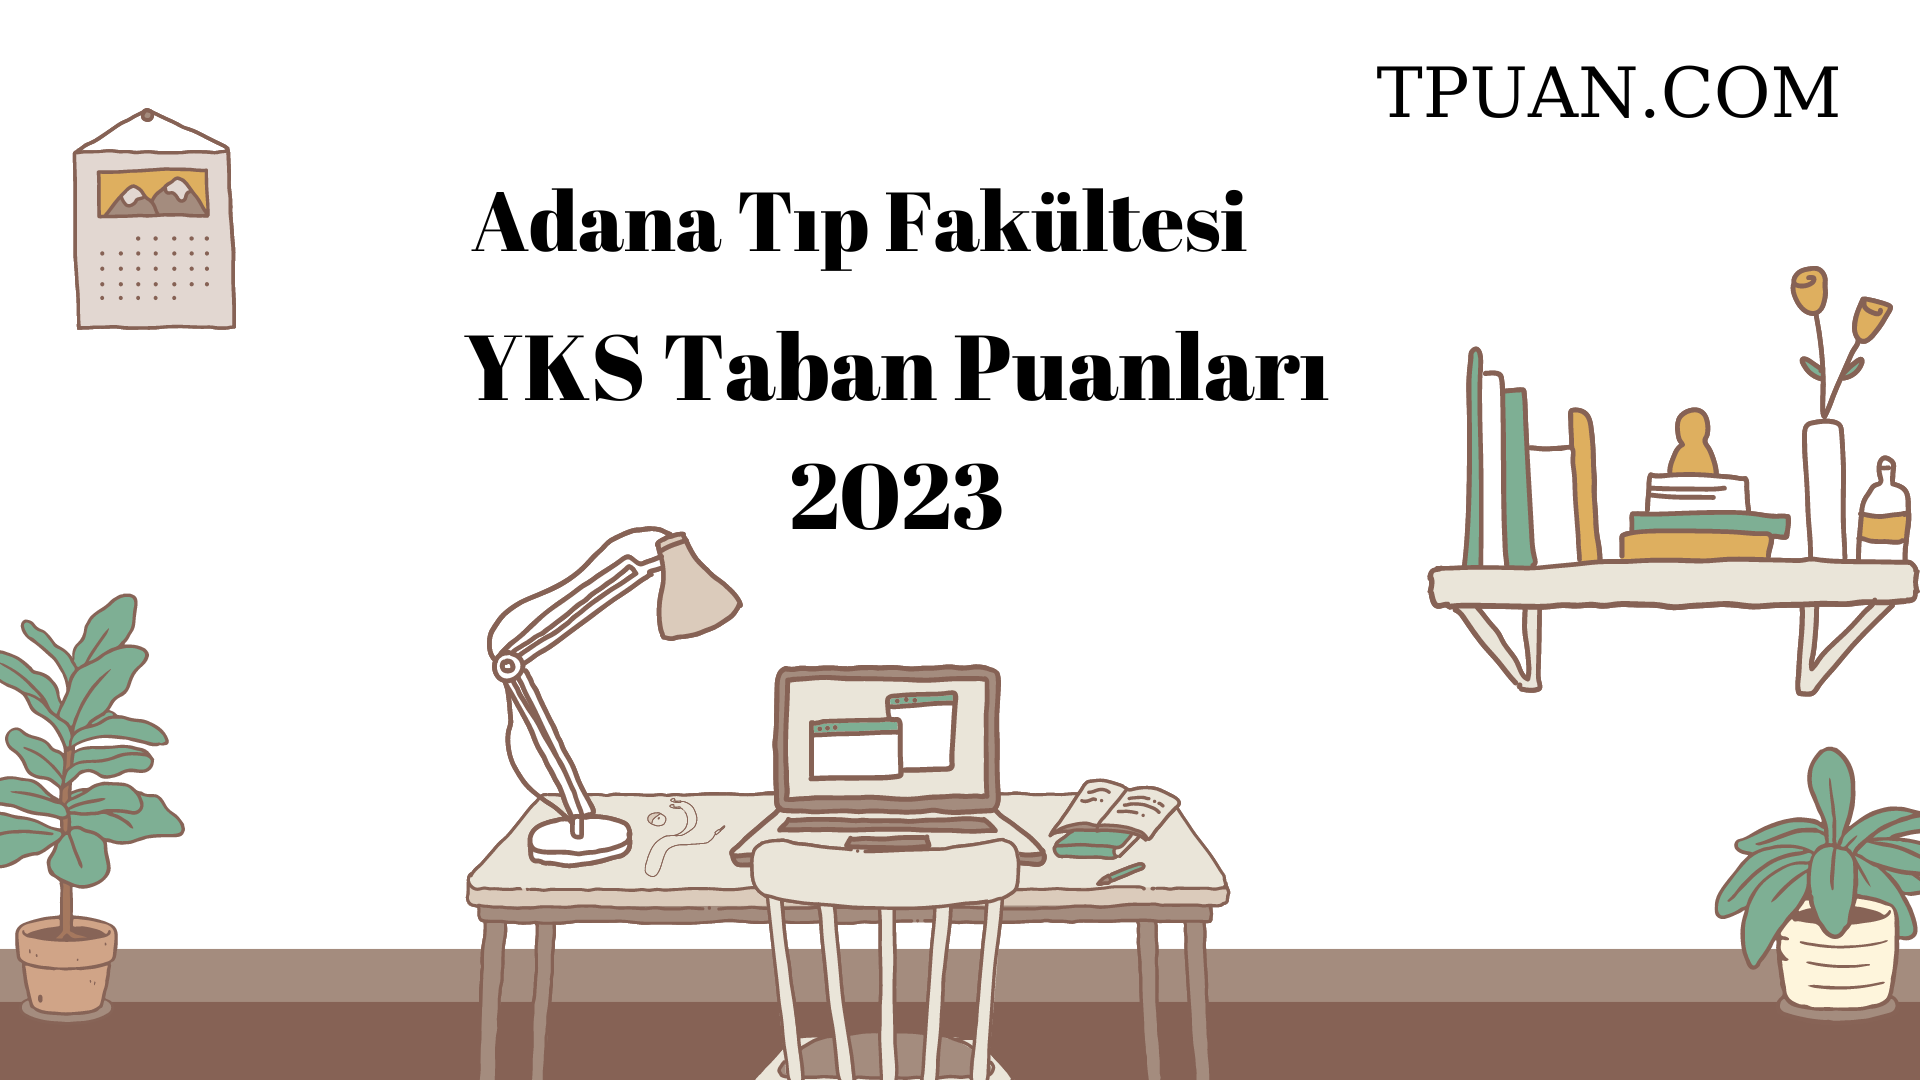  Adana Tıp Fakültesi YKS Taban Puanları 2023